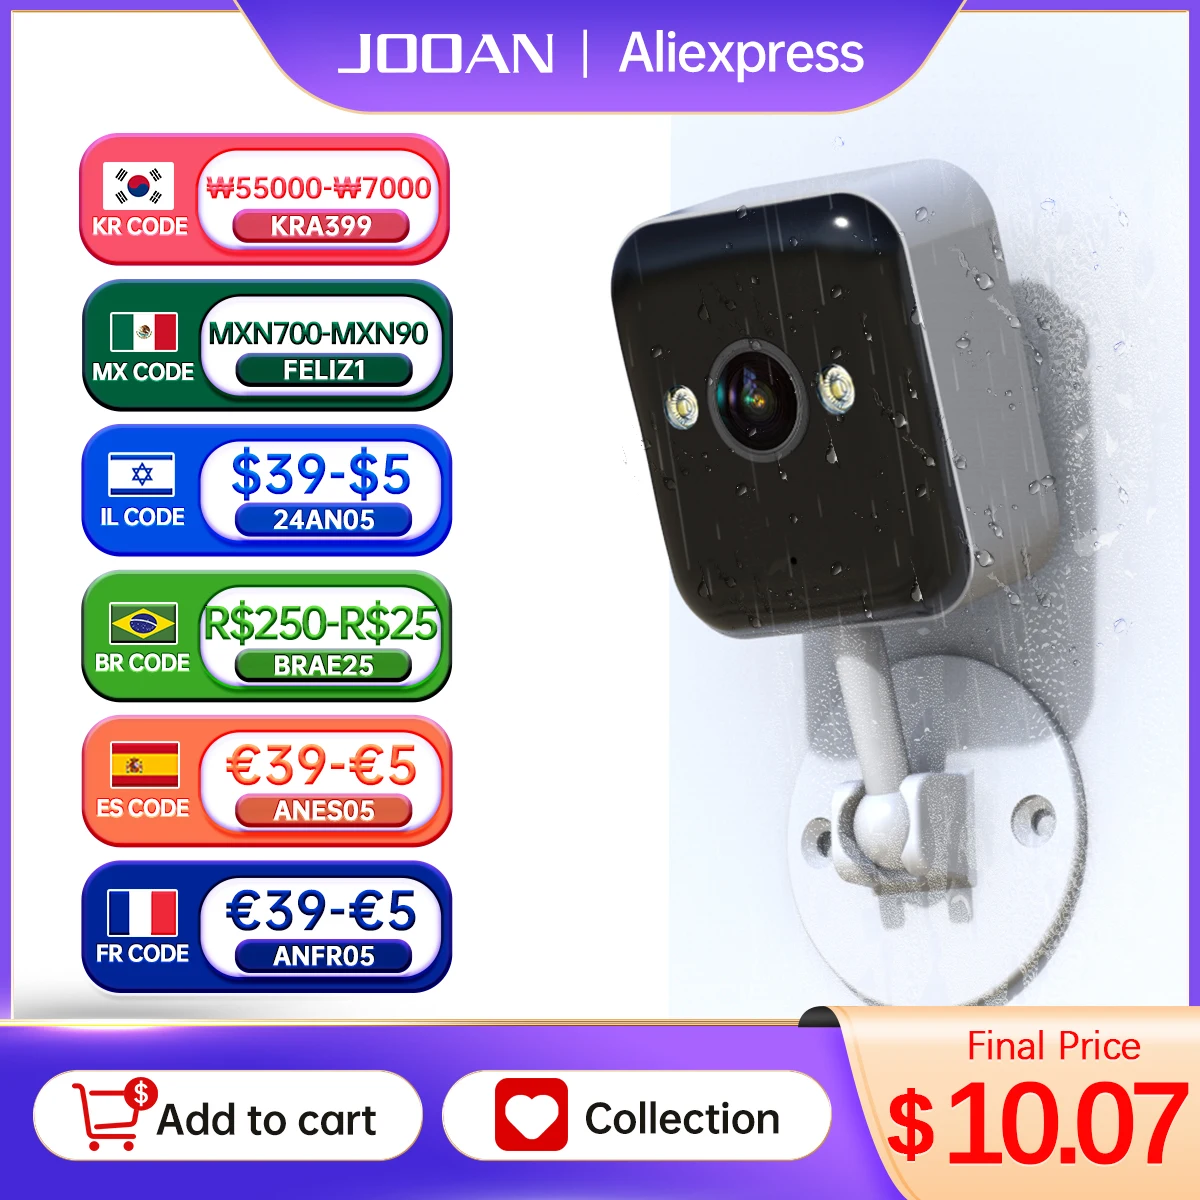 JOOAN 야외 CCTV 감시 카메라, 1080P 와이파이 IP 카메라, 5 배 디지털 줌 컬러 야간 미니 보안 카메라, 가정용 베이비 모니터